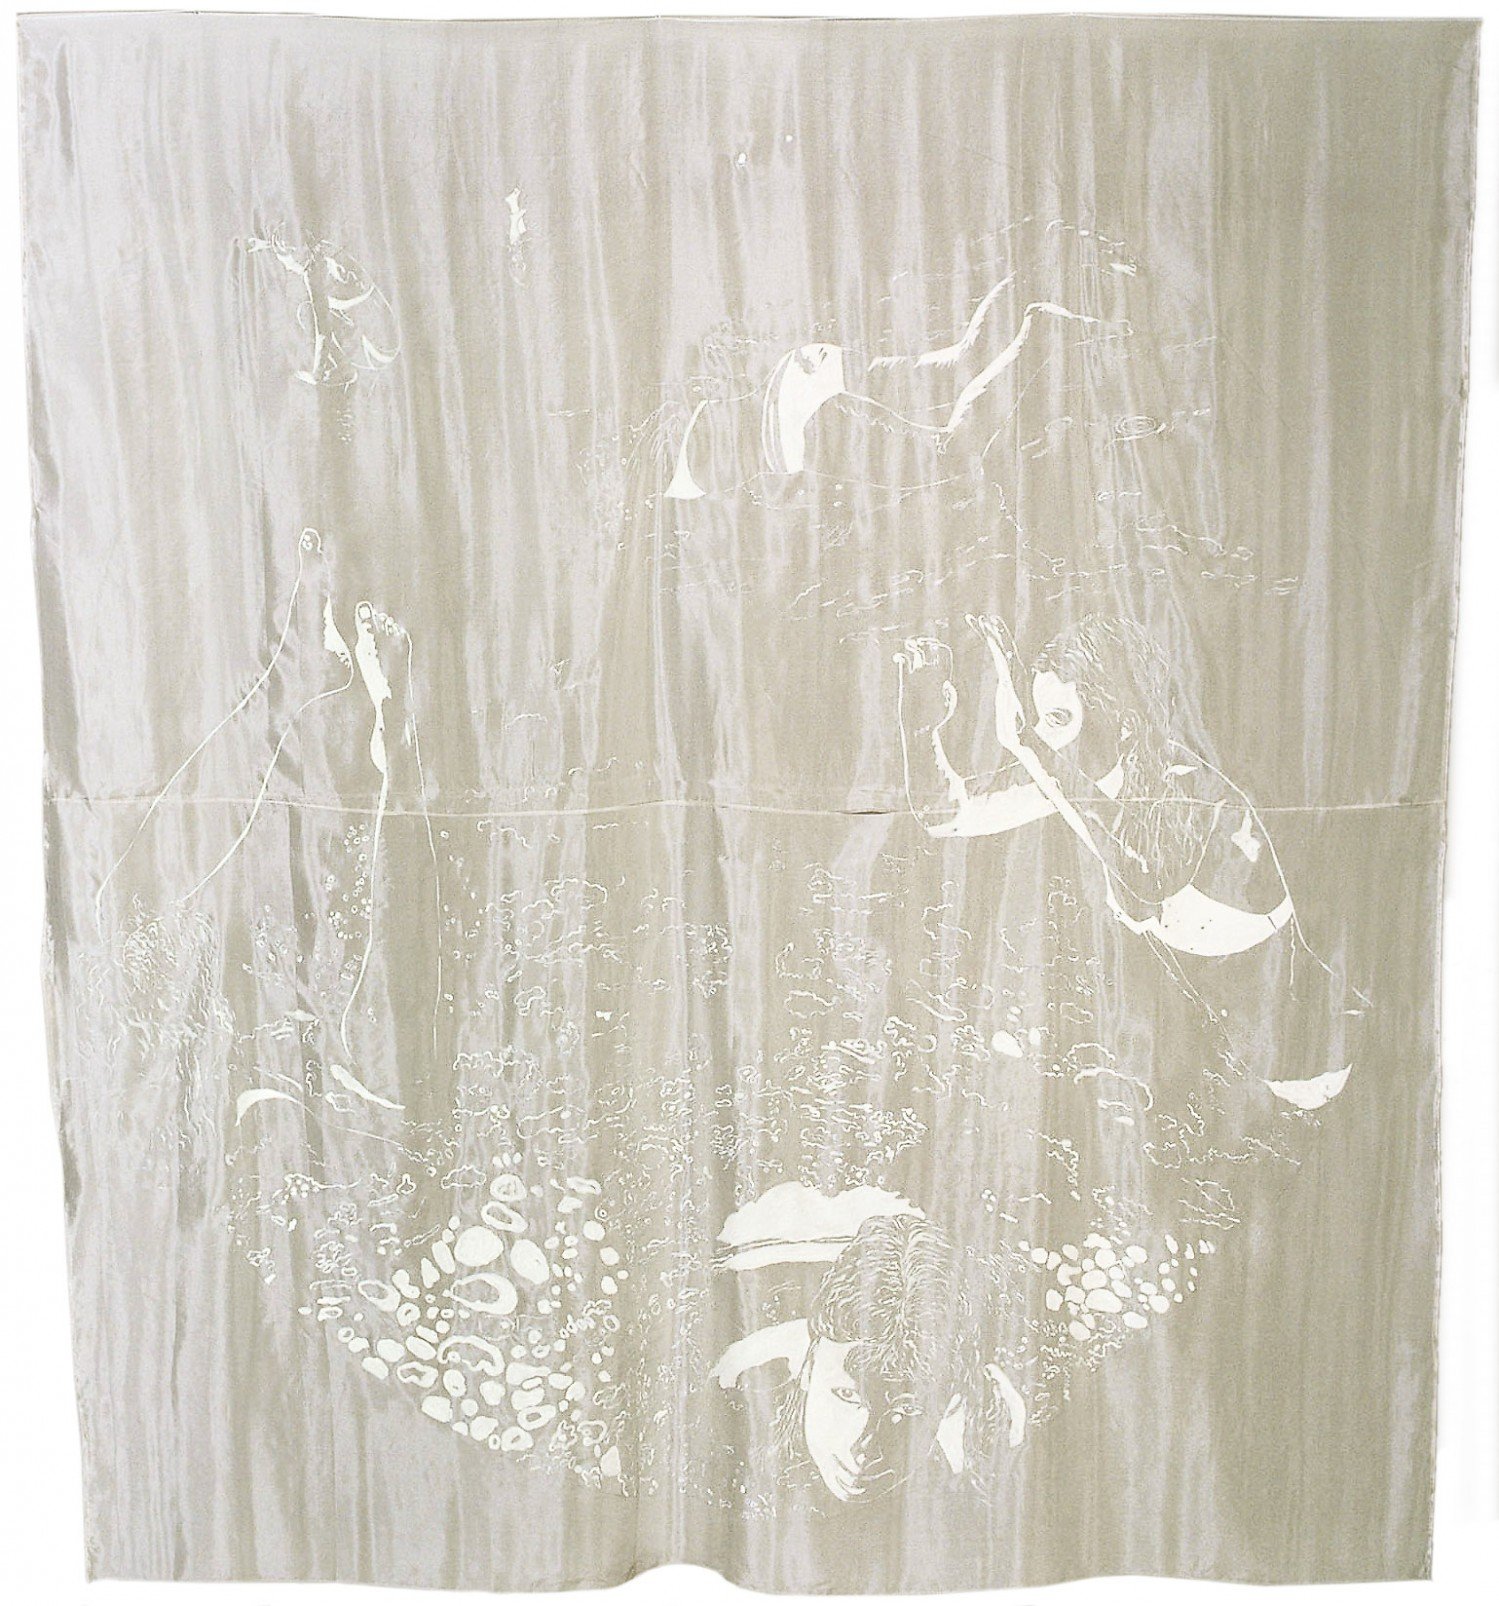 Morze, 1980, akryl na białym jedwabiu, fragment instalacji „Podróż” w galerii MDM, Warszawa, 1981, fot. E.Kuryluk